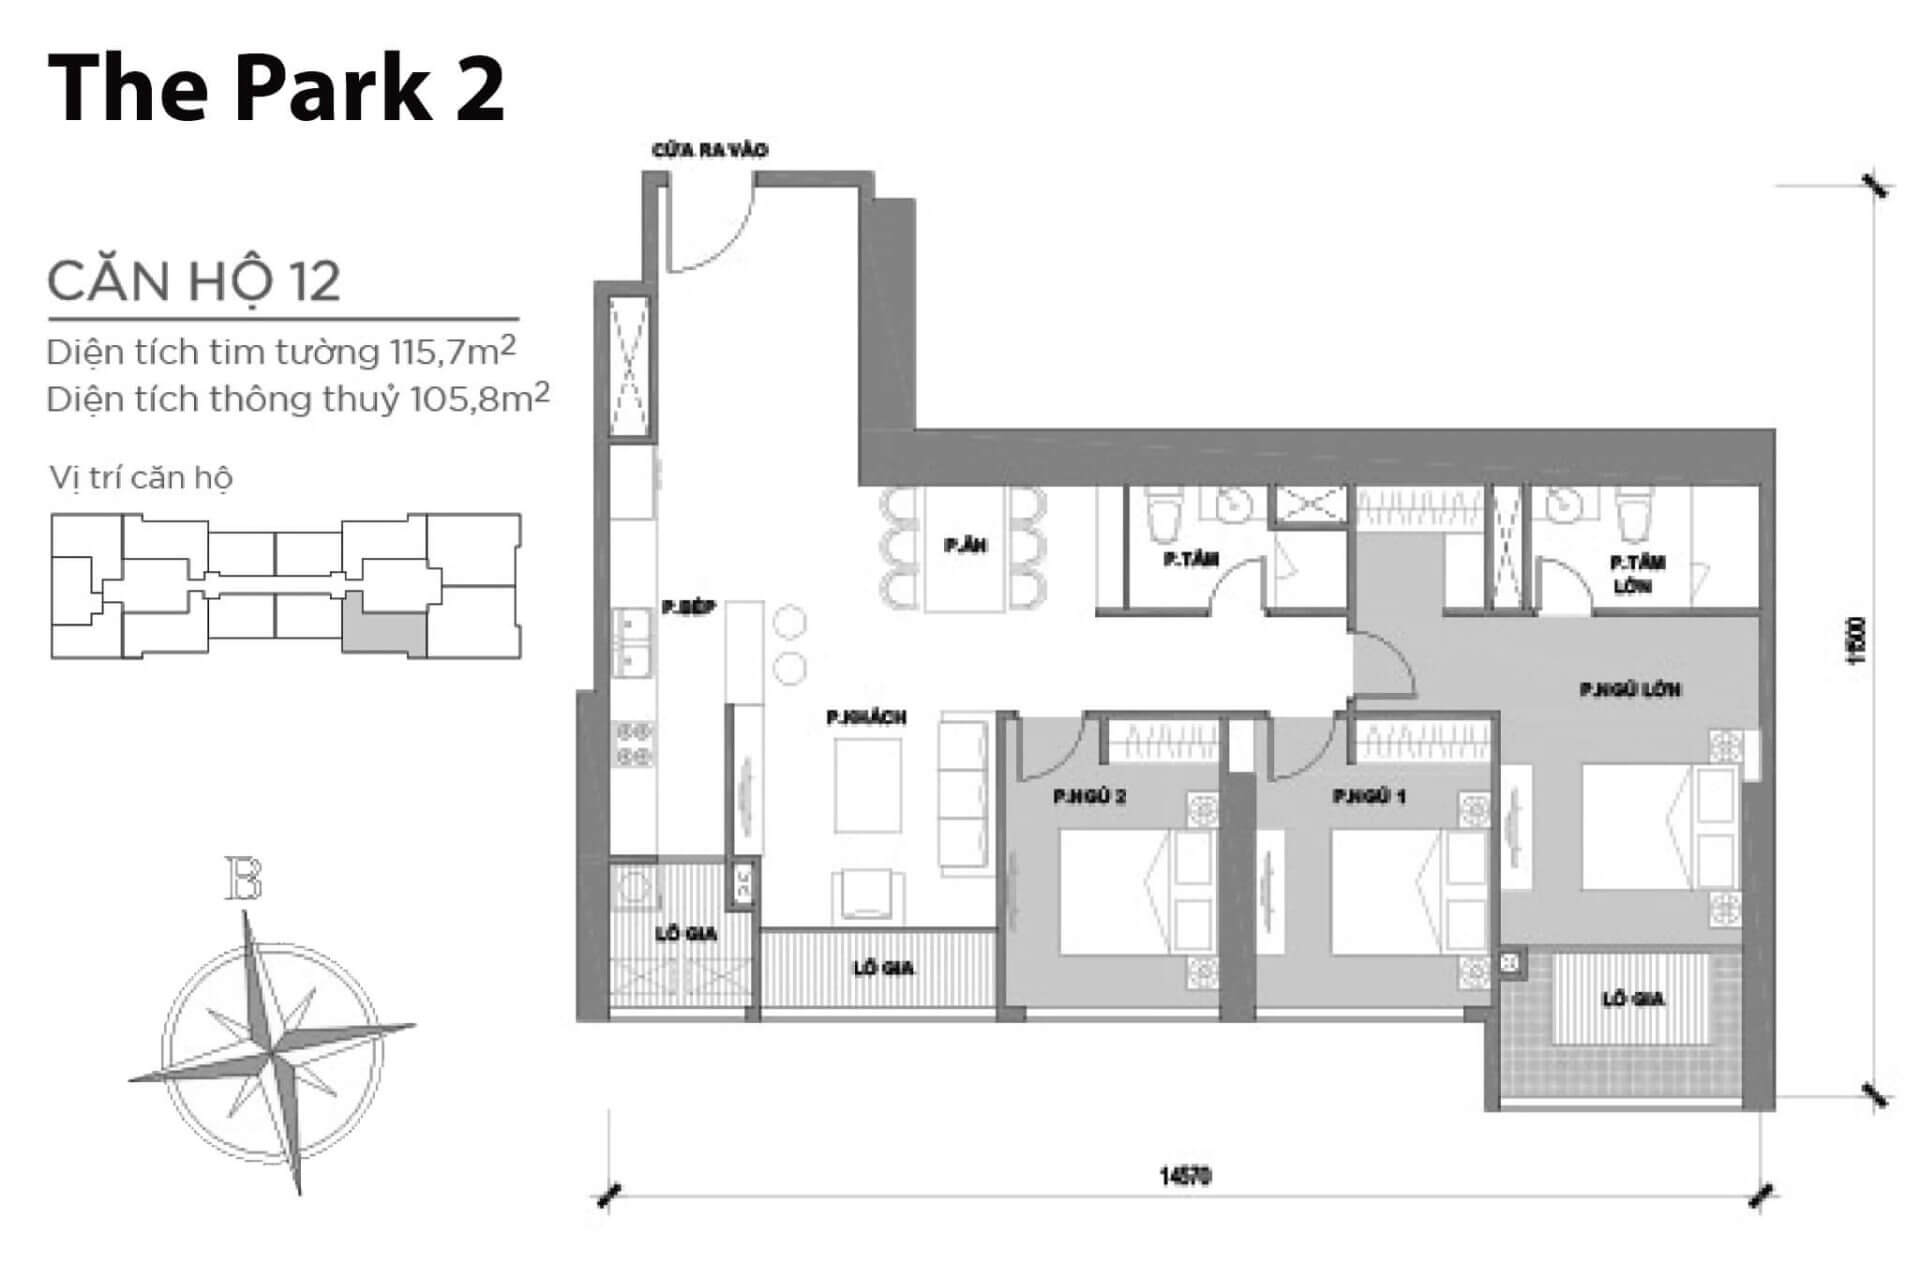 mặt bằng layout căn hộ số 12 Park 2 Vinhomes Central Park